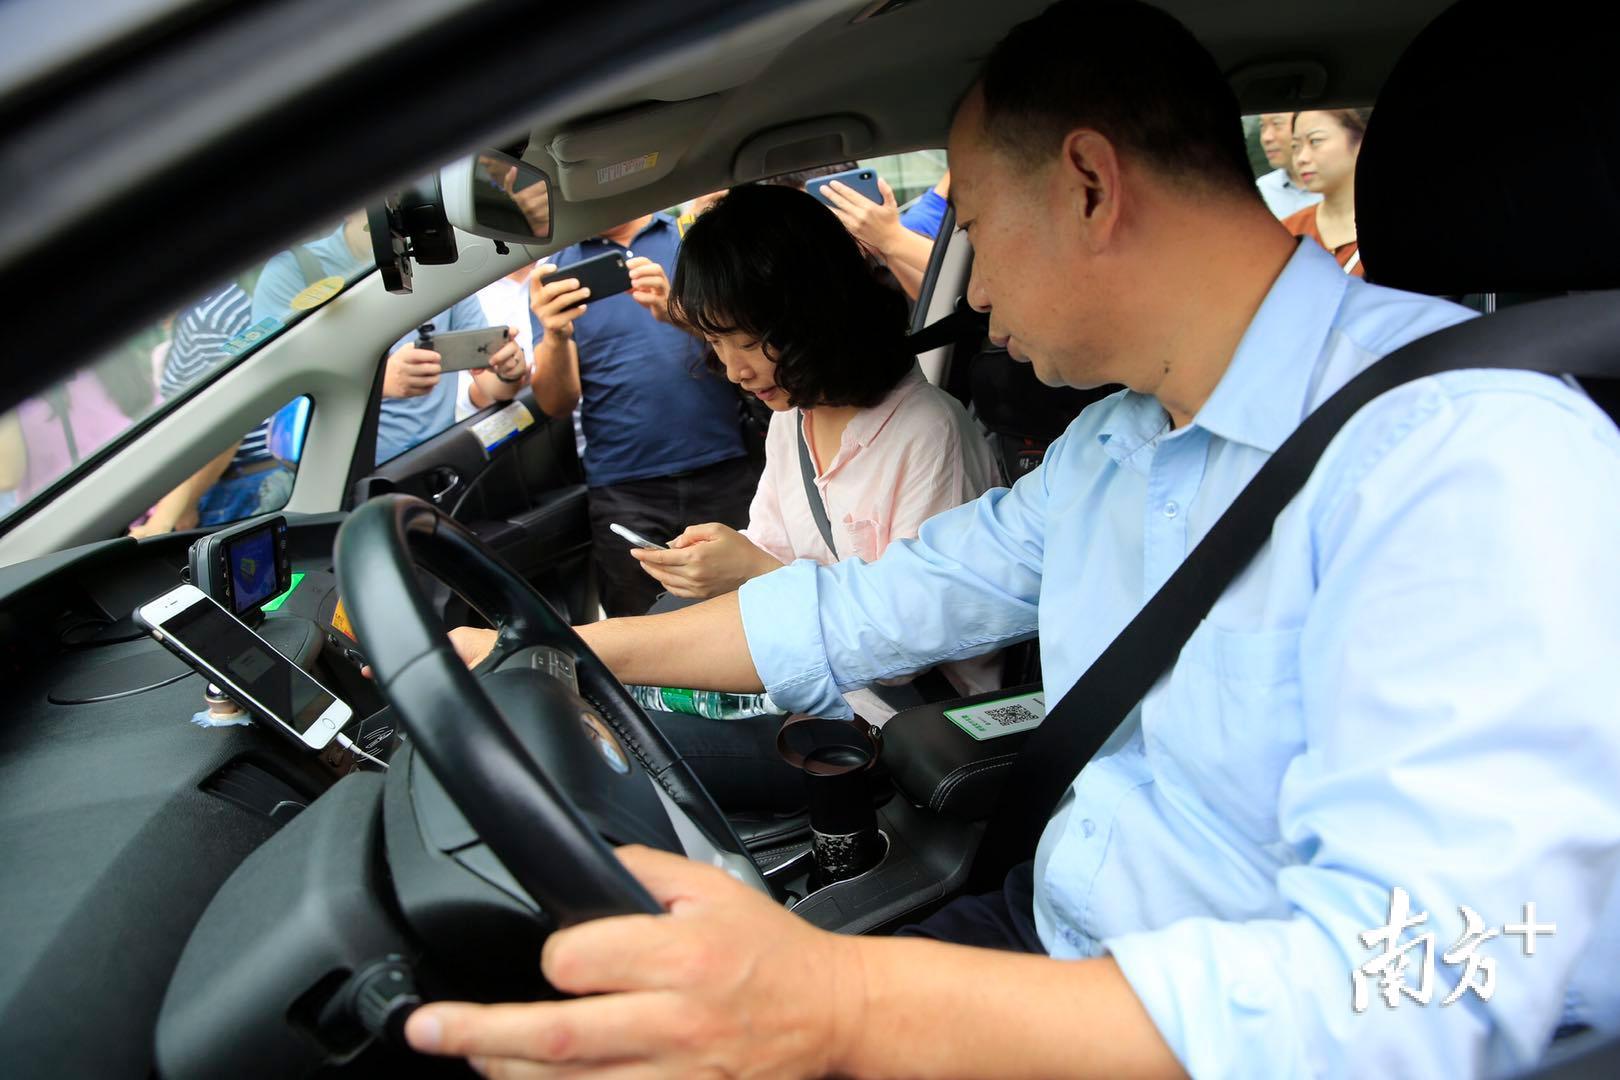 以出租车助手微信小程序为平台,乘客可对司机的服务进行评价, 既能